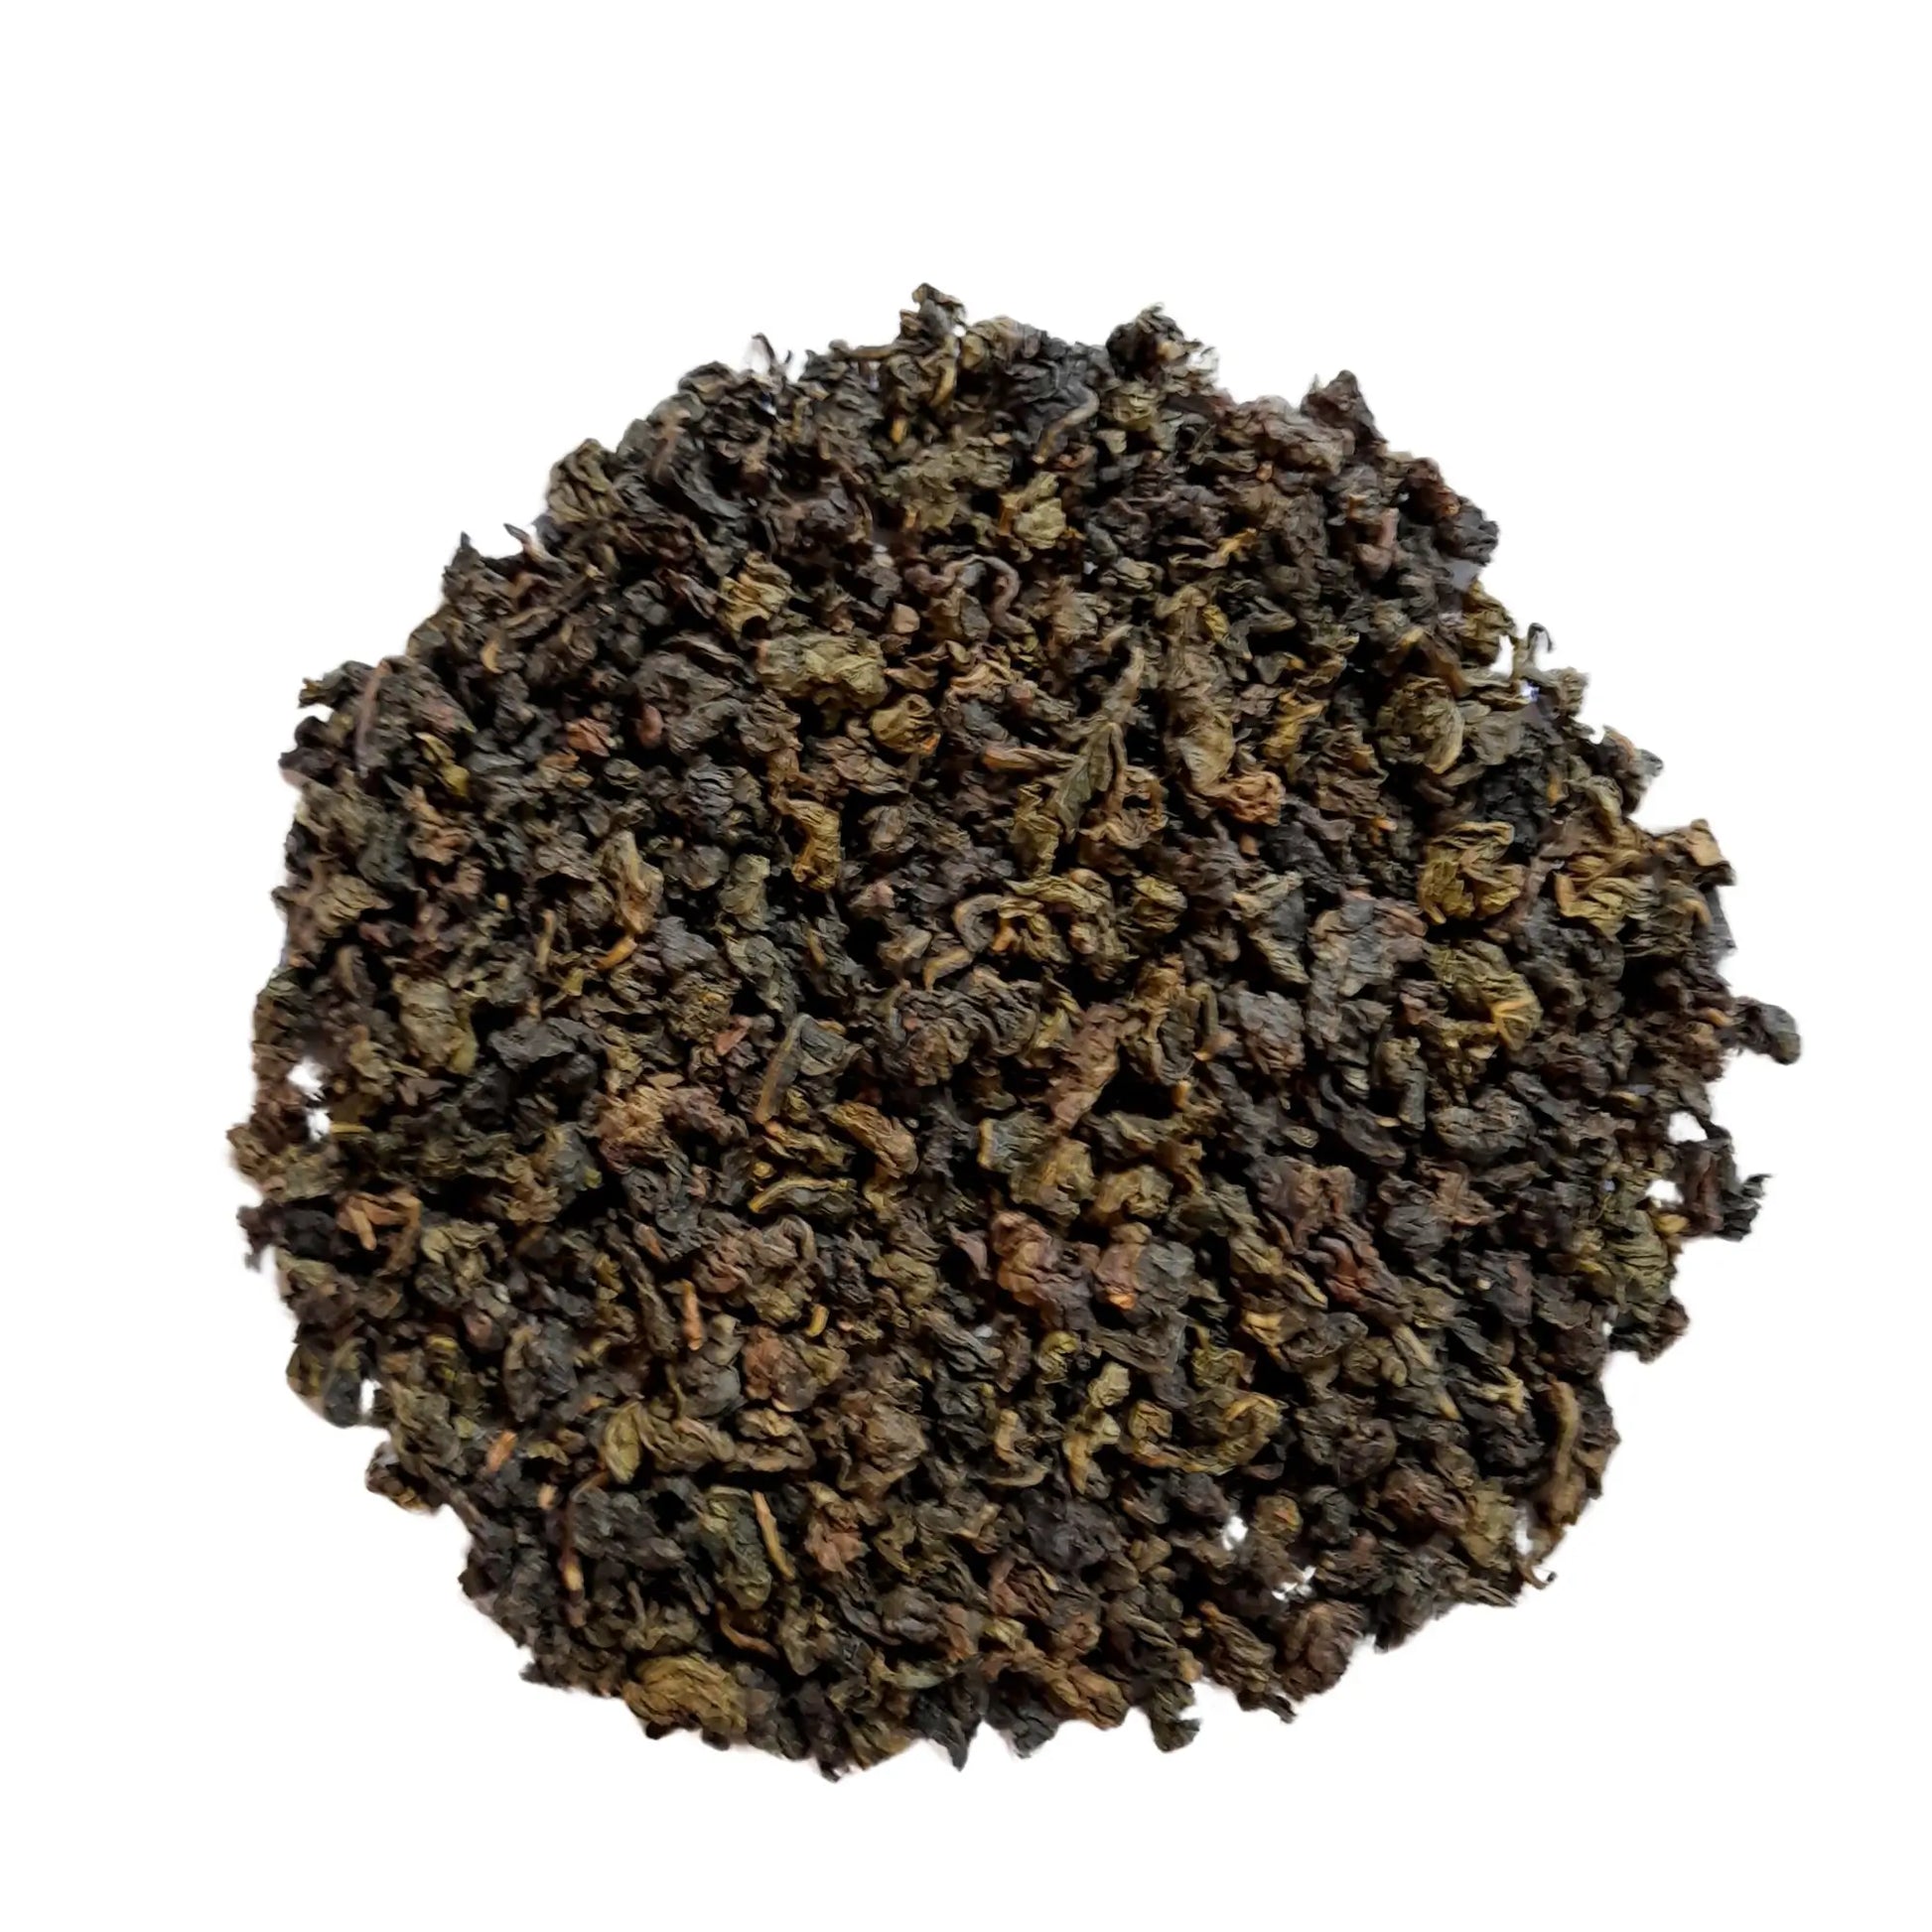 Jade Oolong thee, een geurige en smaakvollo Oolong